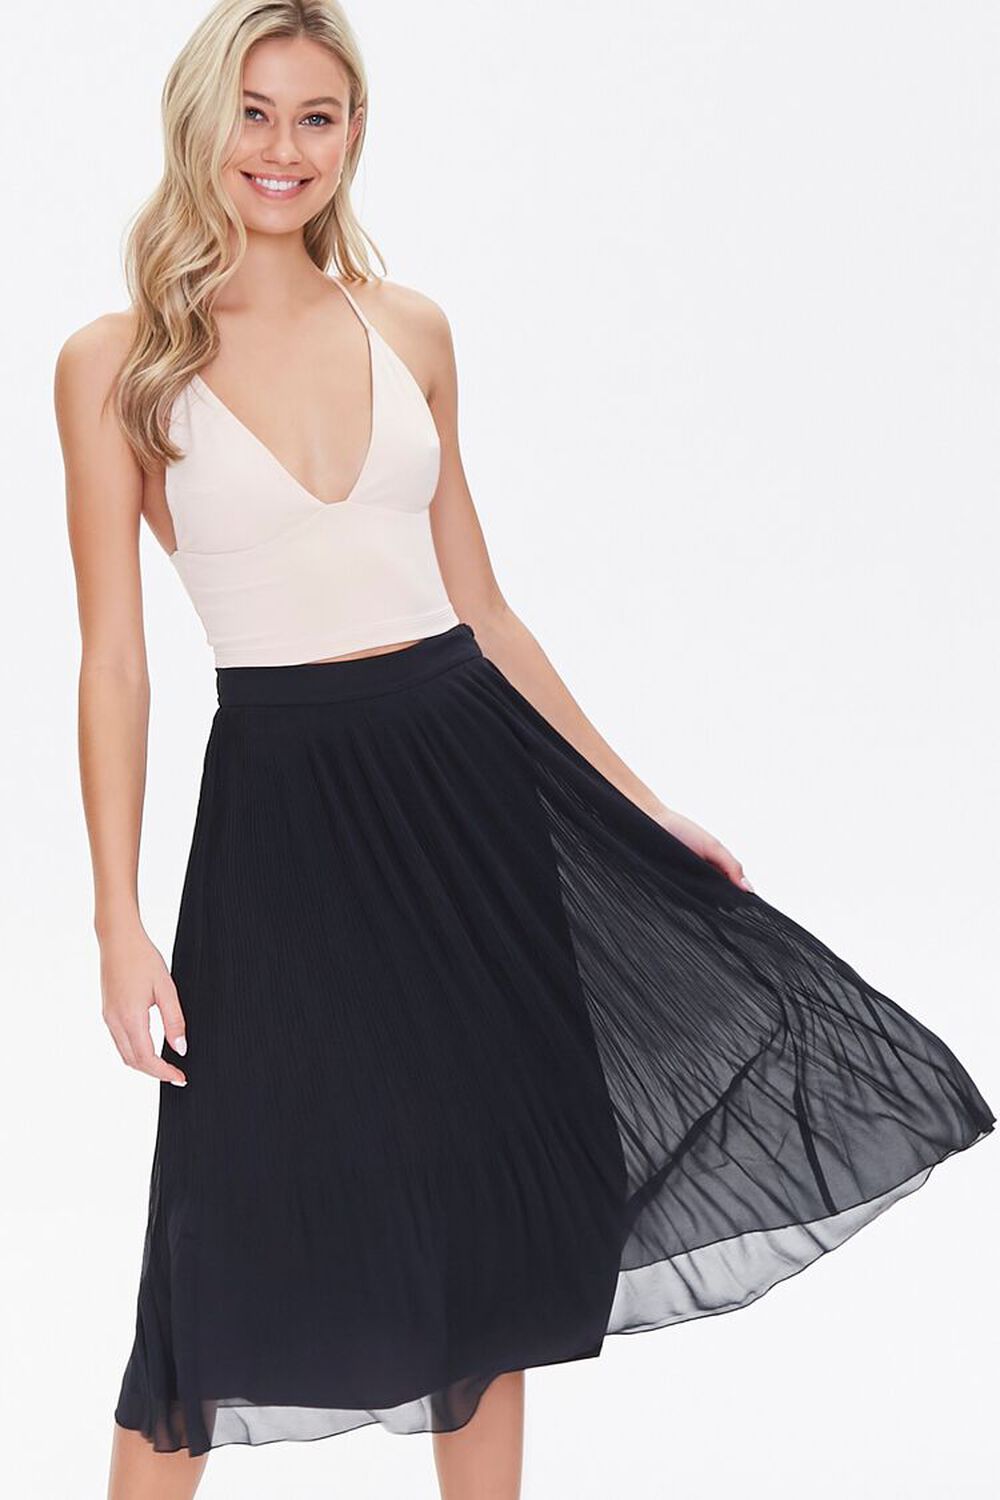 BLACK Knee-Length Pleated Skirt, image 1